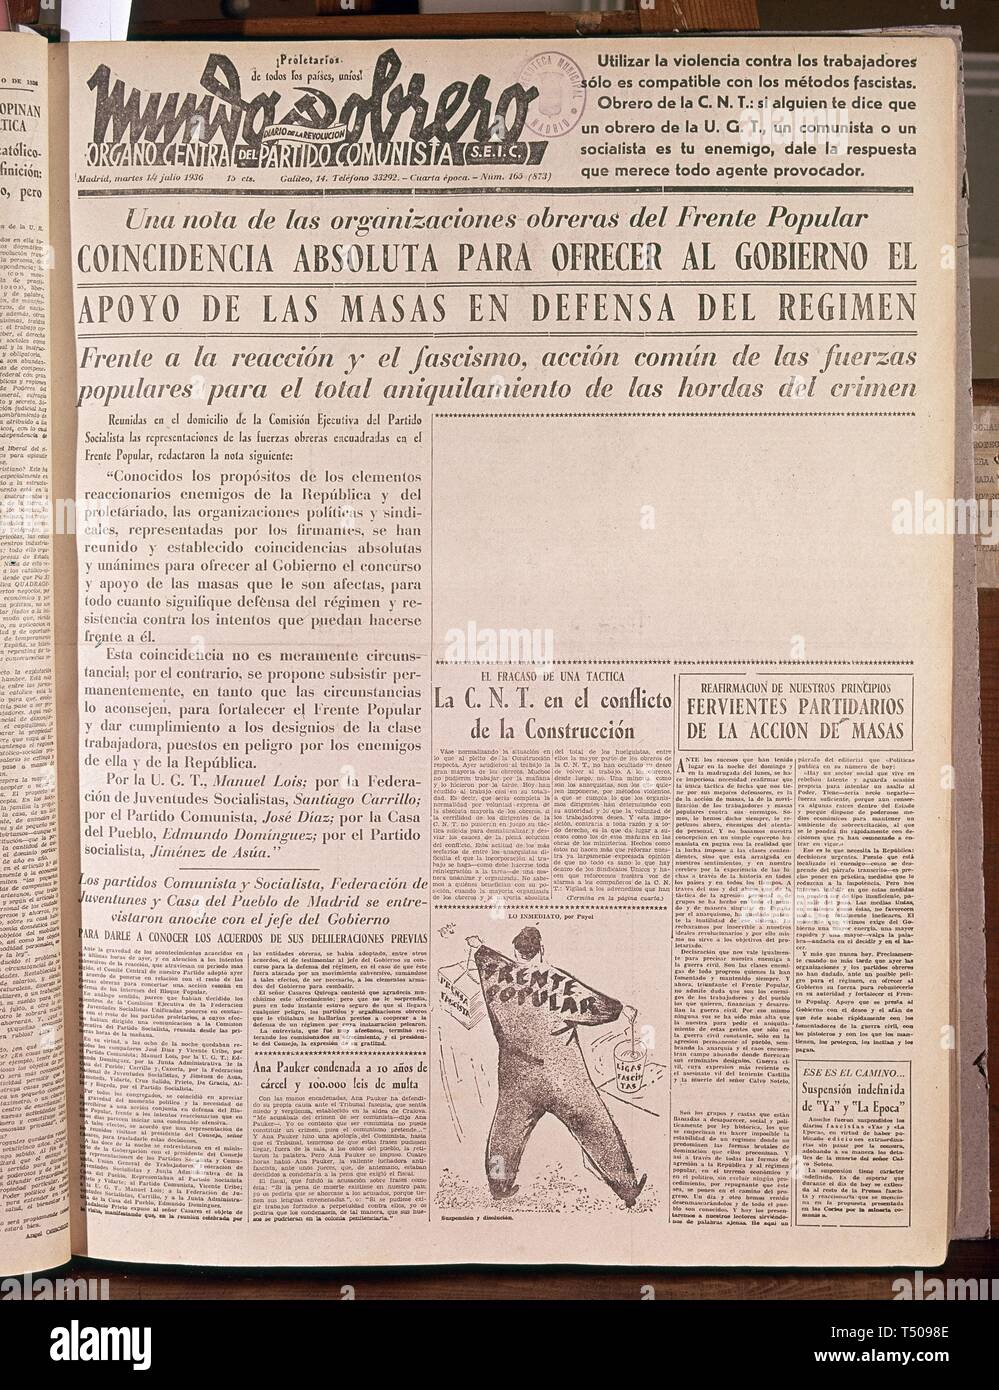 periodico-mundo-obrero-1936-ubicacion-hemeroteca-municipal-madrid-espana-t5098e.jpg